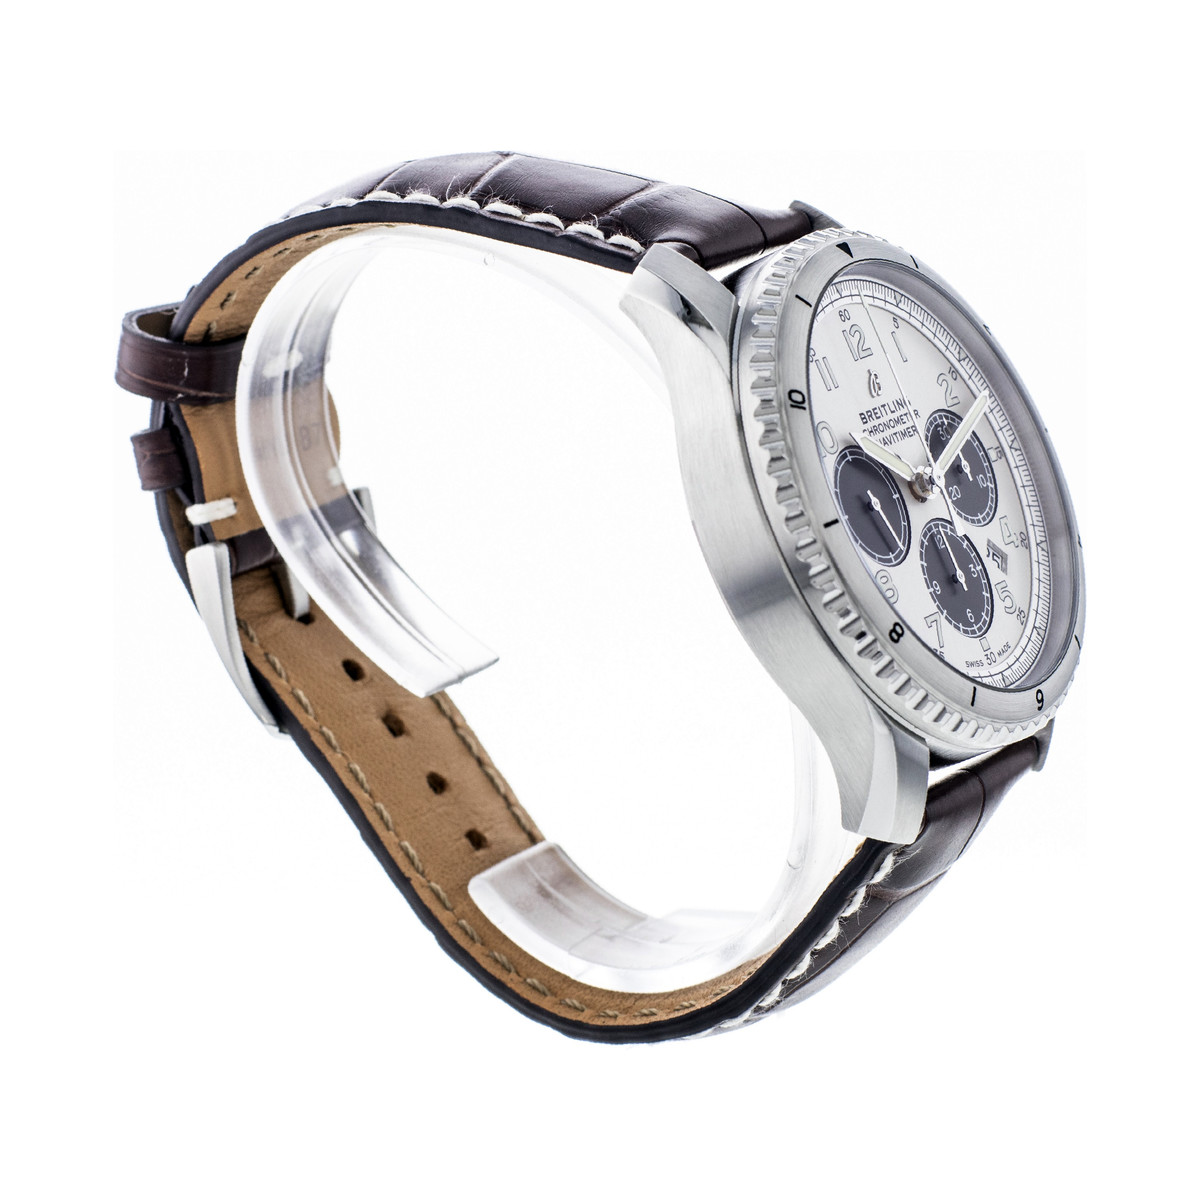 Montre d'occasion Breitling Navitimer homme chronographe automatique acier bracelet cuir marron - vue 4